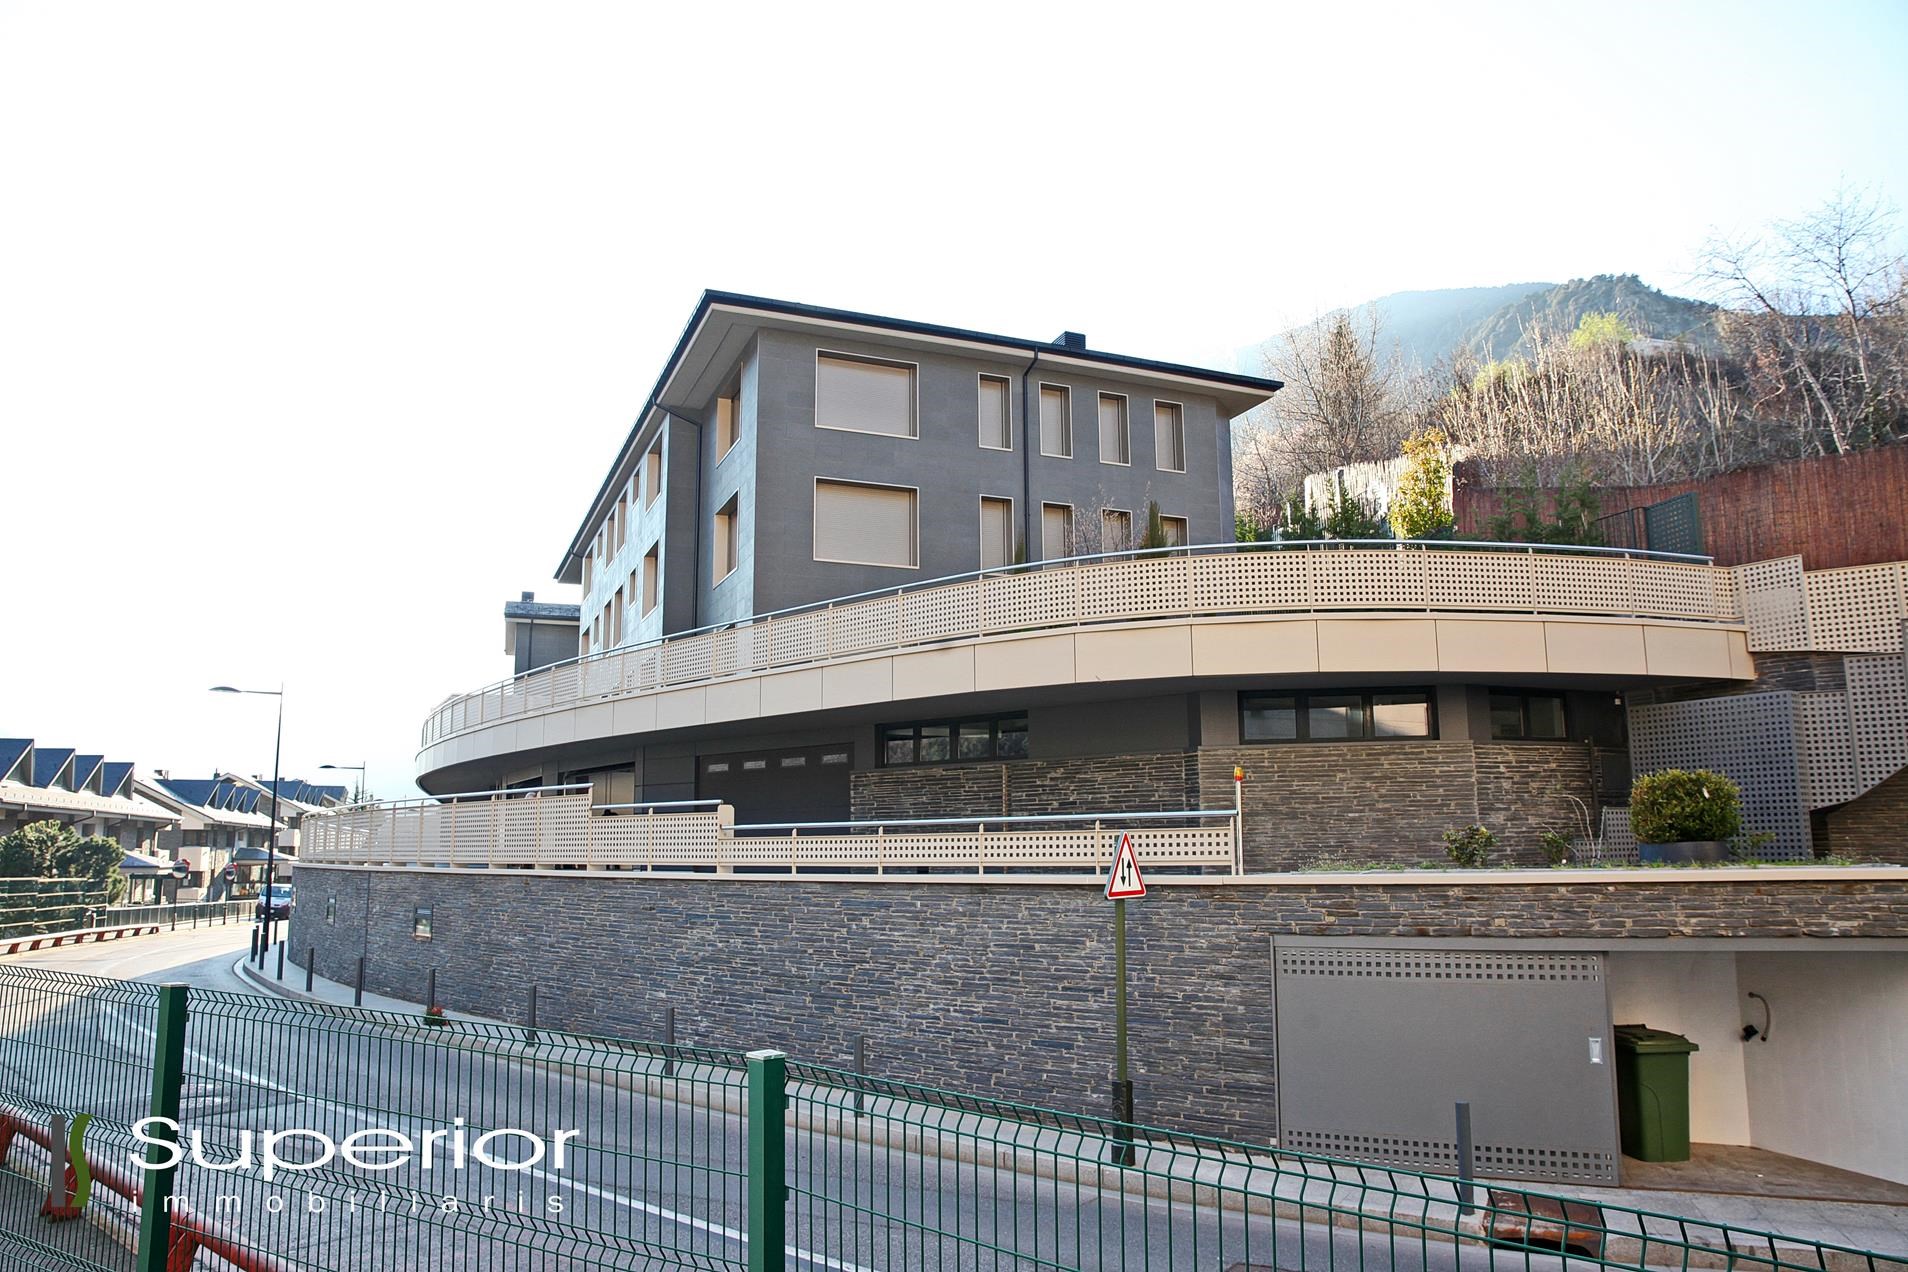 Pis de lloguer a Andorra la Vella, 3 habitacions, 185 metres